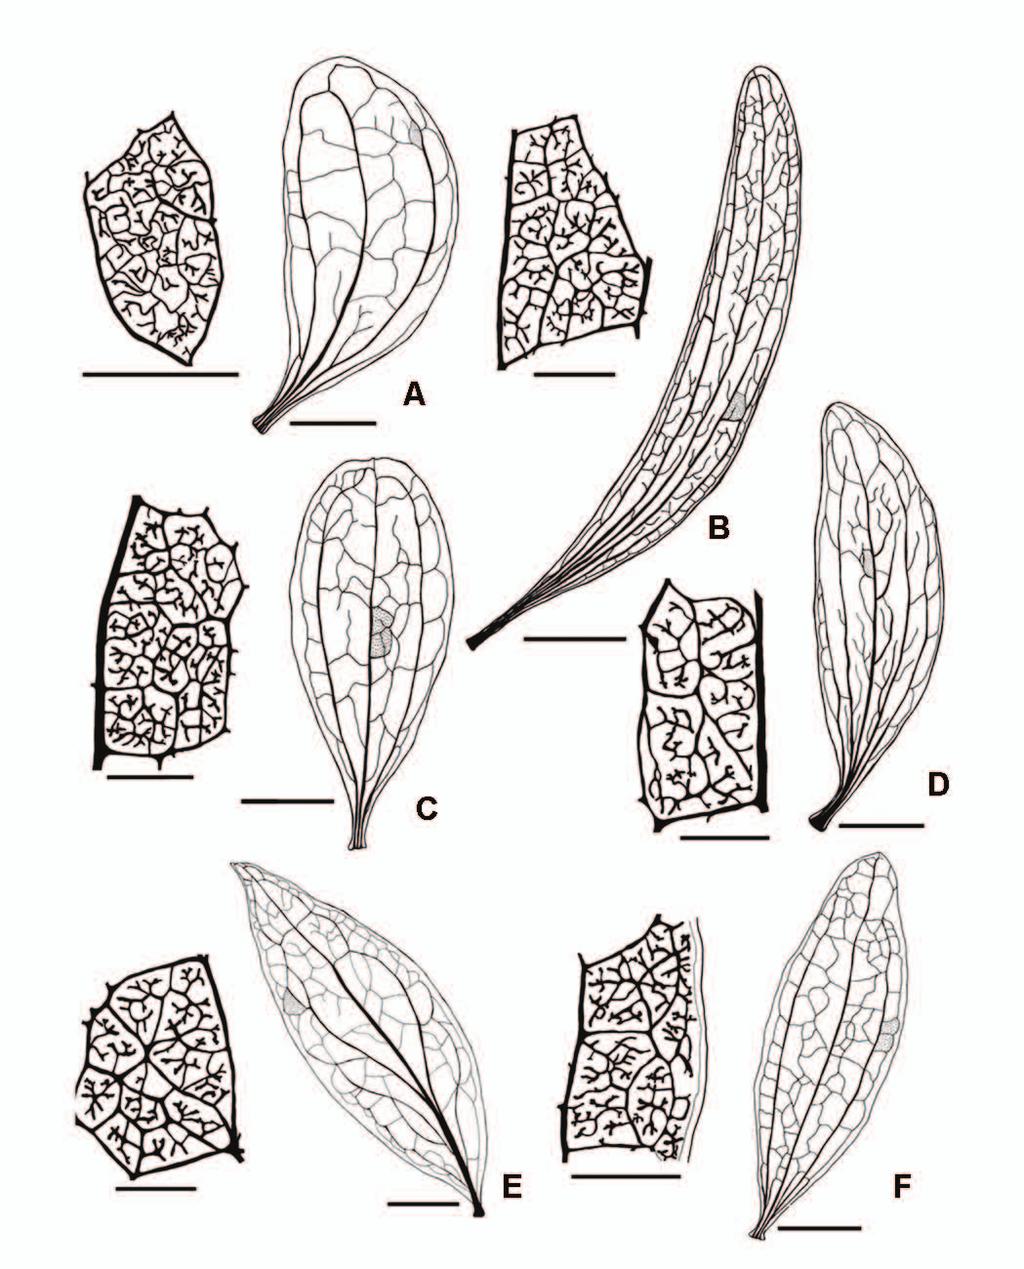 17 Figura 1 - Padrão de venação das folhas de espécies hemiparasitas de Phoradendron. À esquerda, detalhe das aréolas destacadas na ilustração geral da direita. A. P. obtusissimum. B. P. linearifolium.